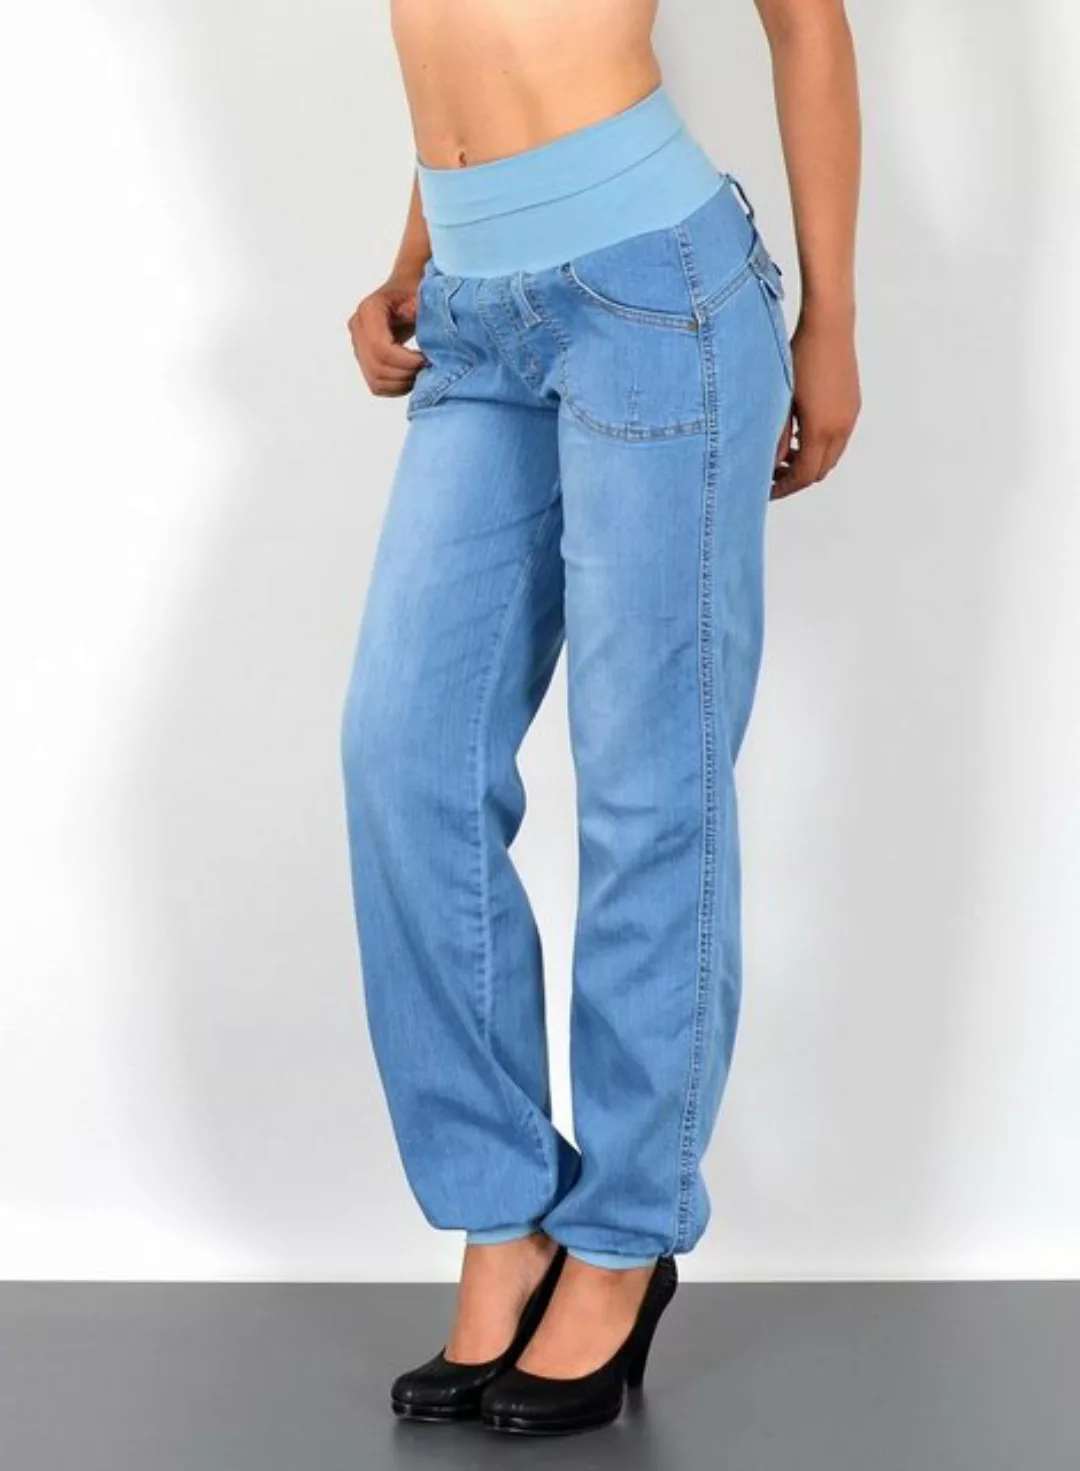 ESRA Pumphose J132 Damen Jeans Haremshose High Waist, Damen Jeanshose Pumph günstig online kaufen